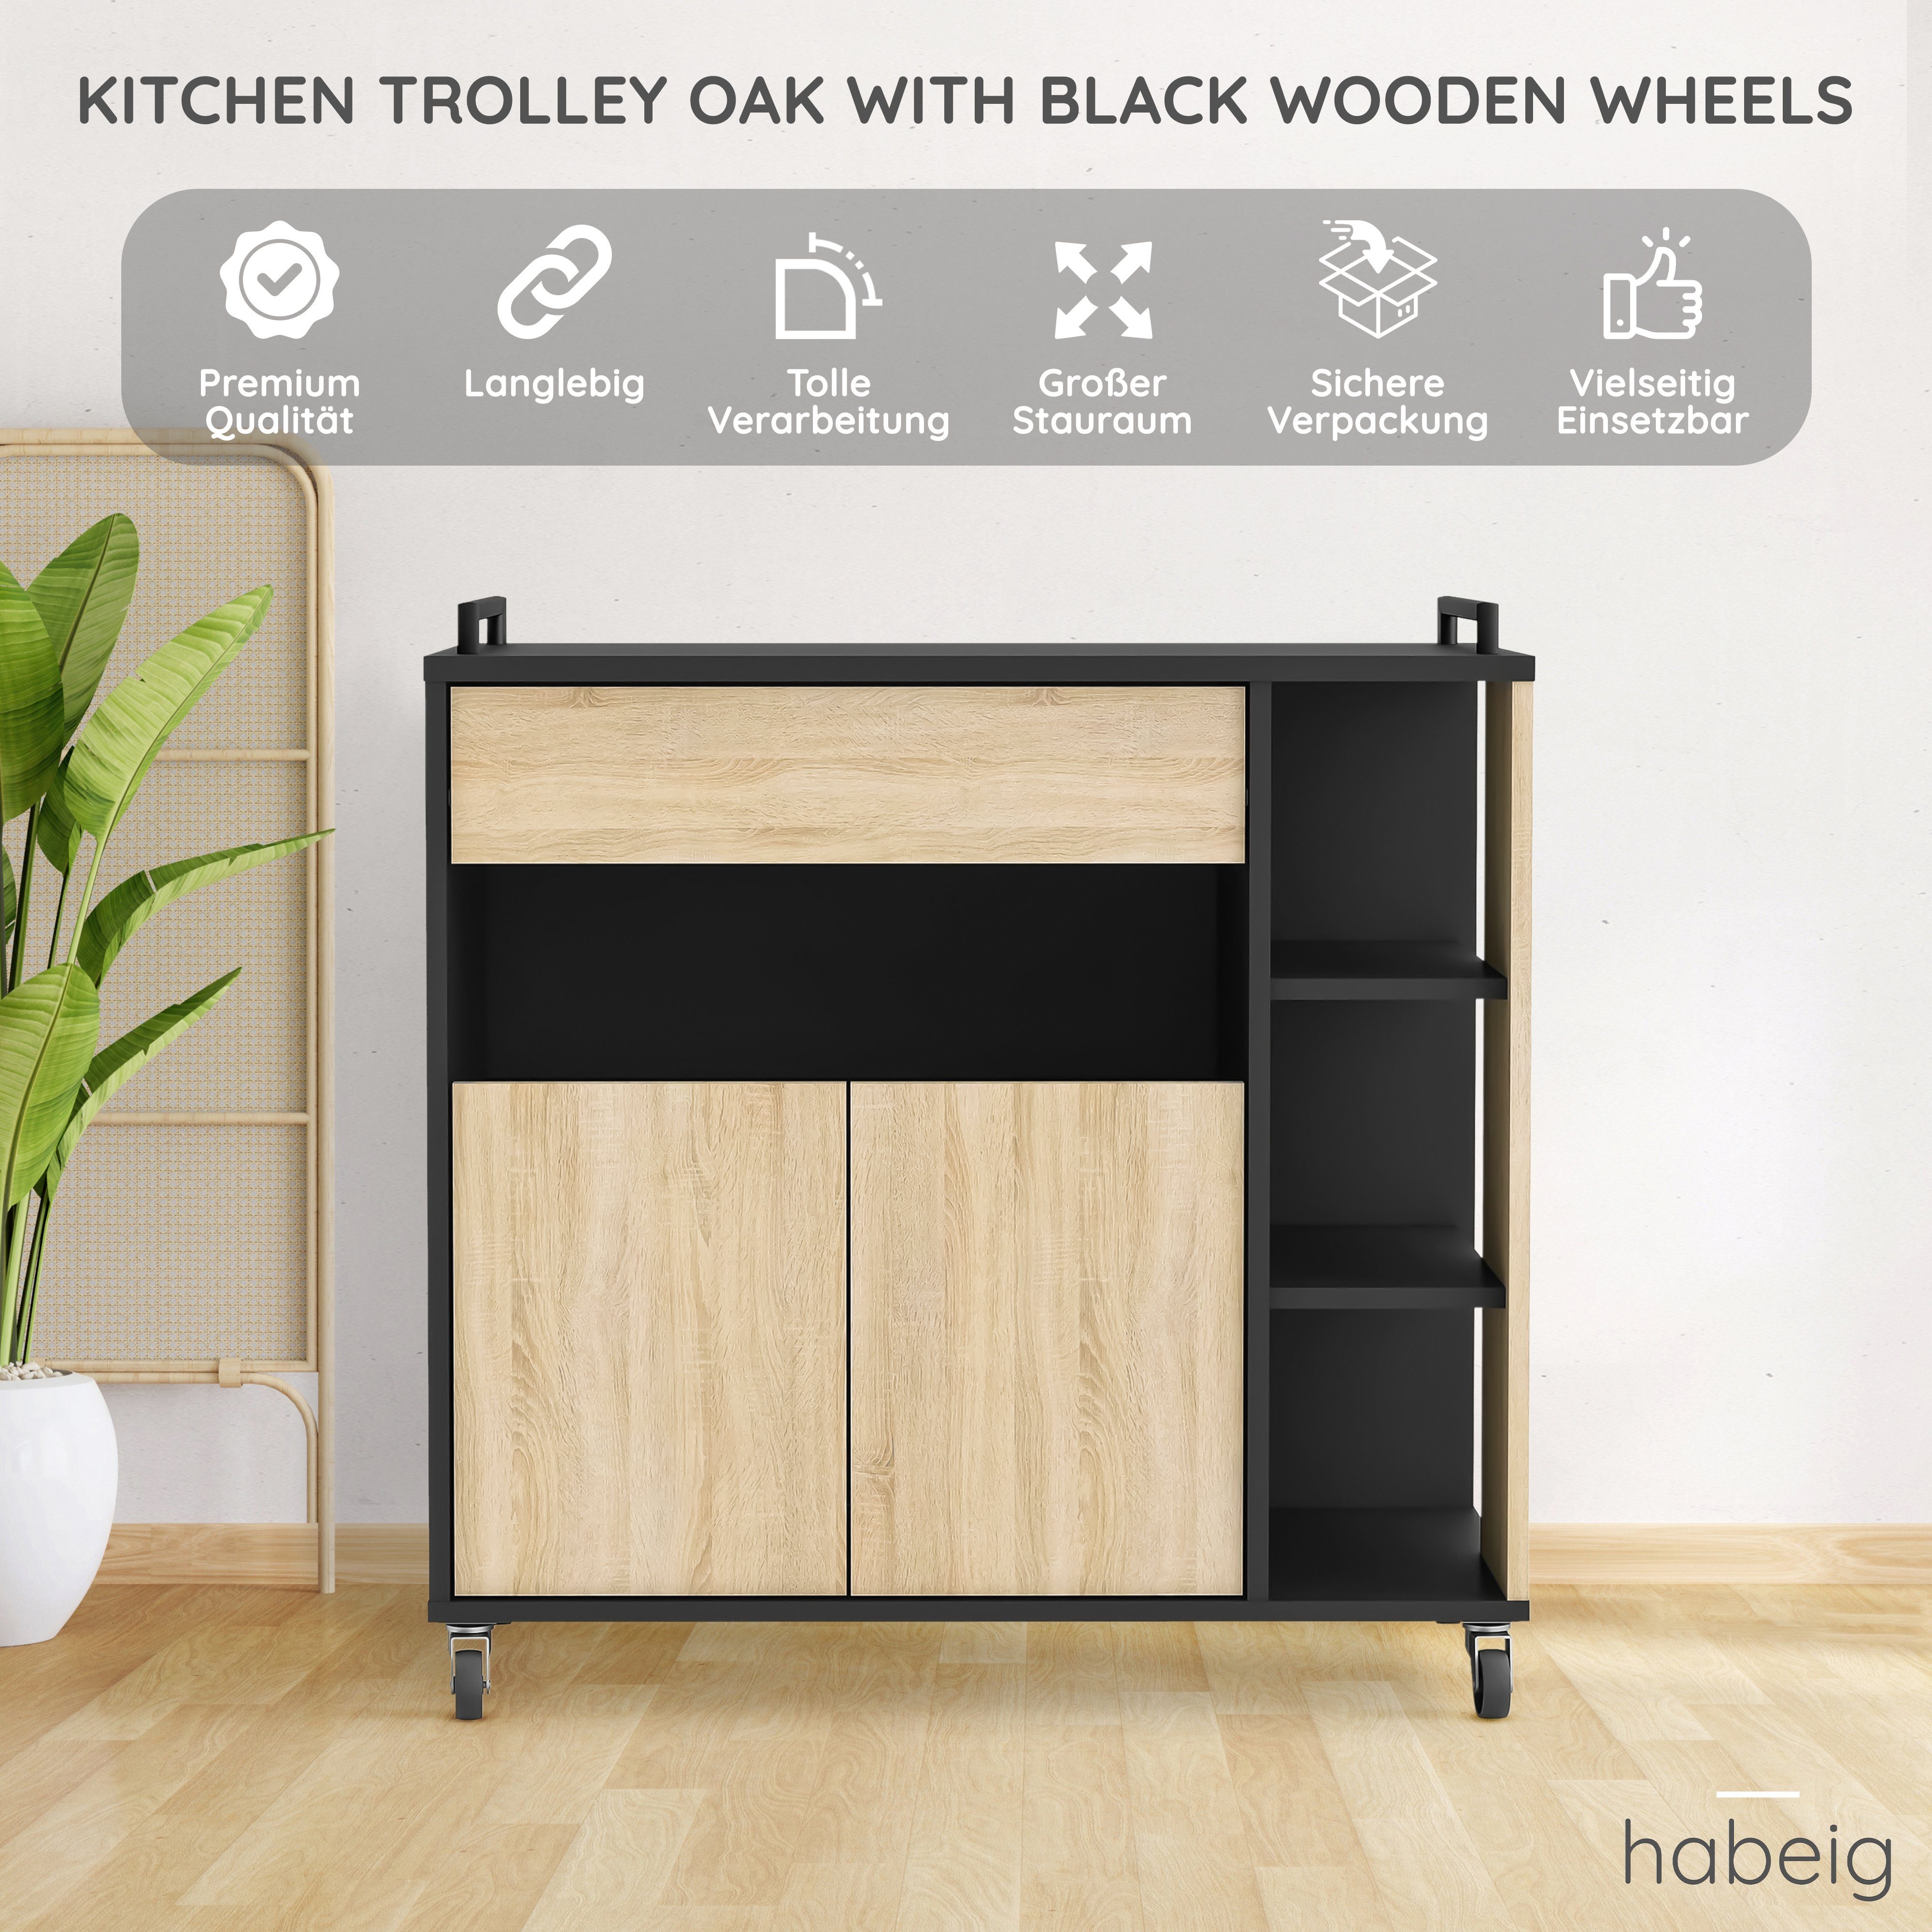 habeig Küchenwagen Küchenwagen #283 schwarz Küchentrolley mit Holz Schublade Rollen Eiche